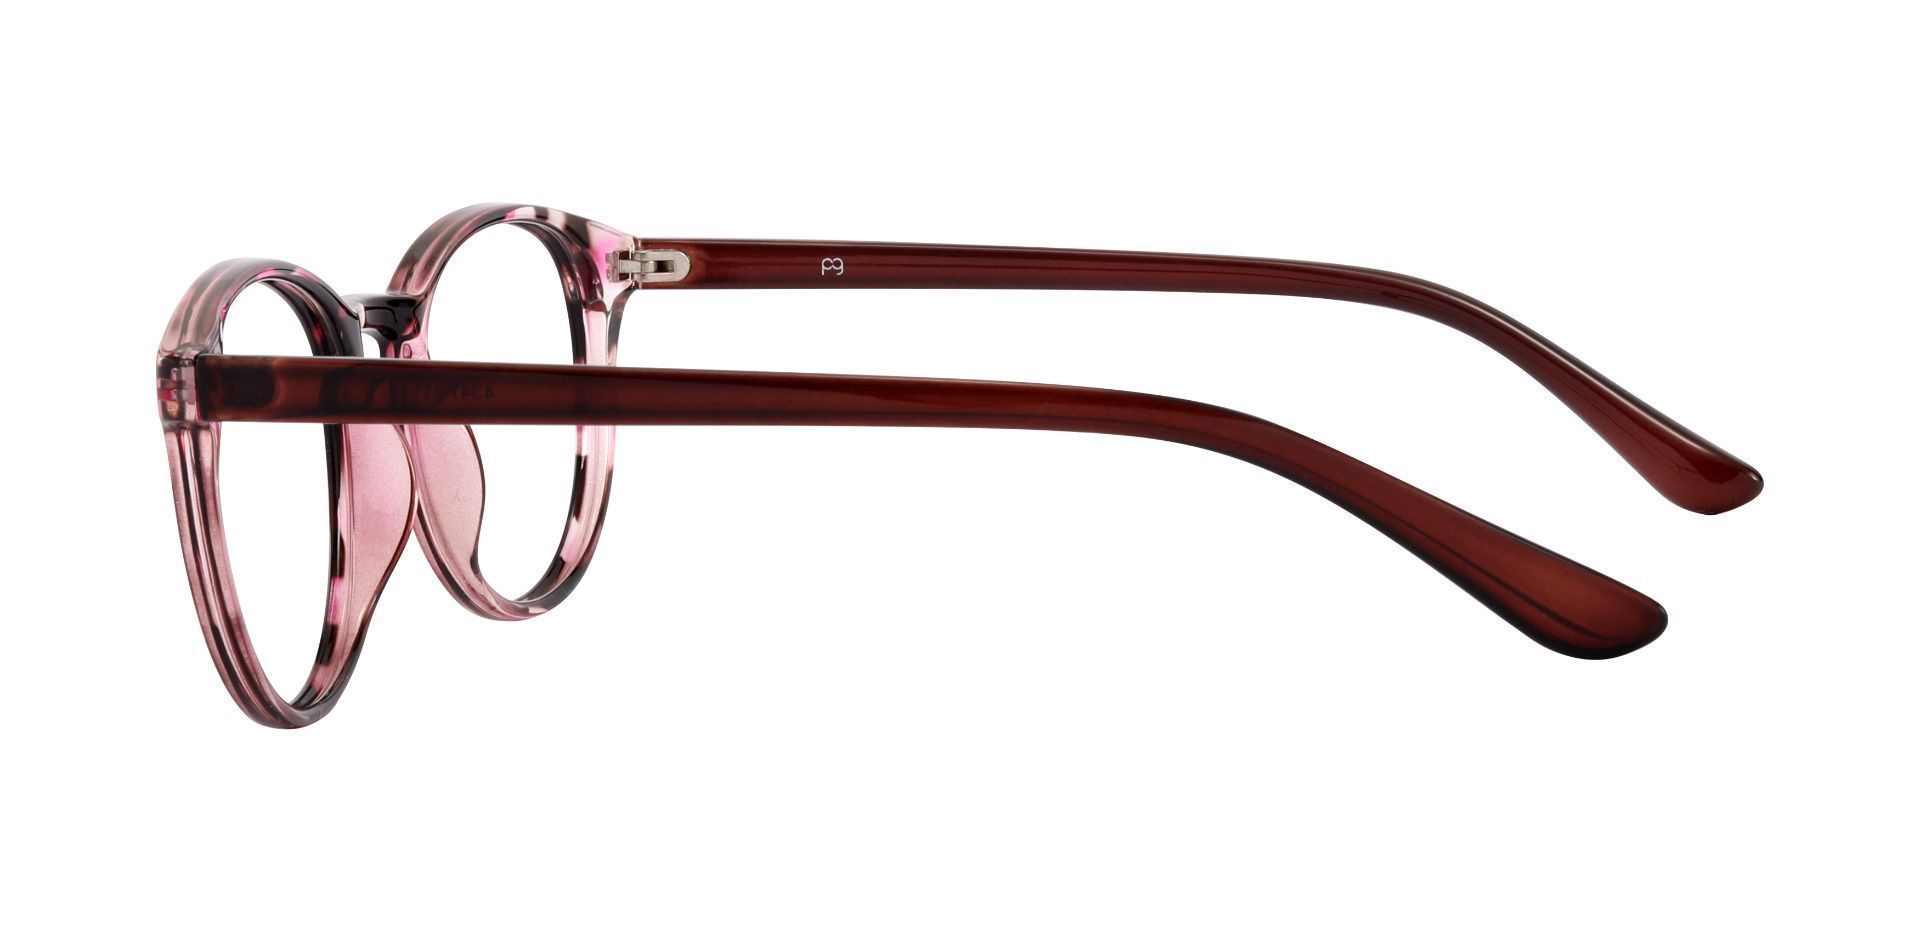 Clarita Oval Non-Rx Glasses - Purple